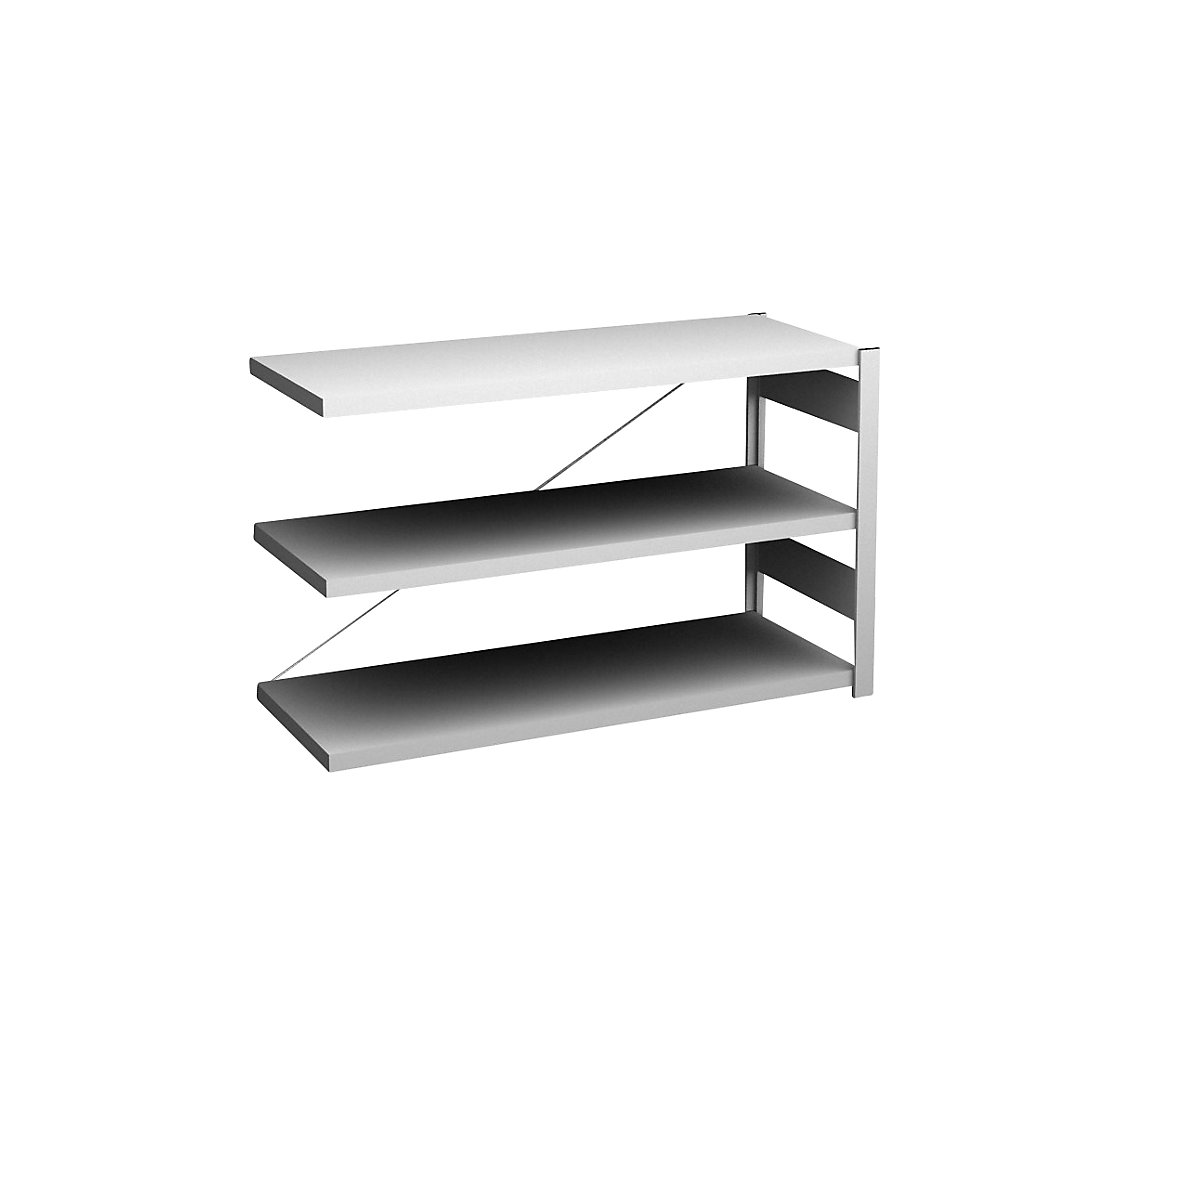 Sideboard shelving unit, light grey – hofe, height 825 mm, 3 shelves, extension shelf unit, shelf depth 500 mm, max. shelf load 185 kg-7